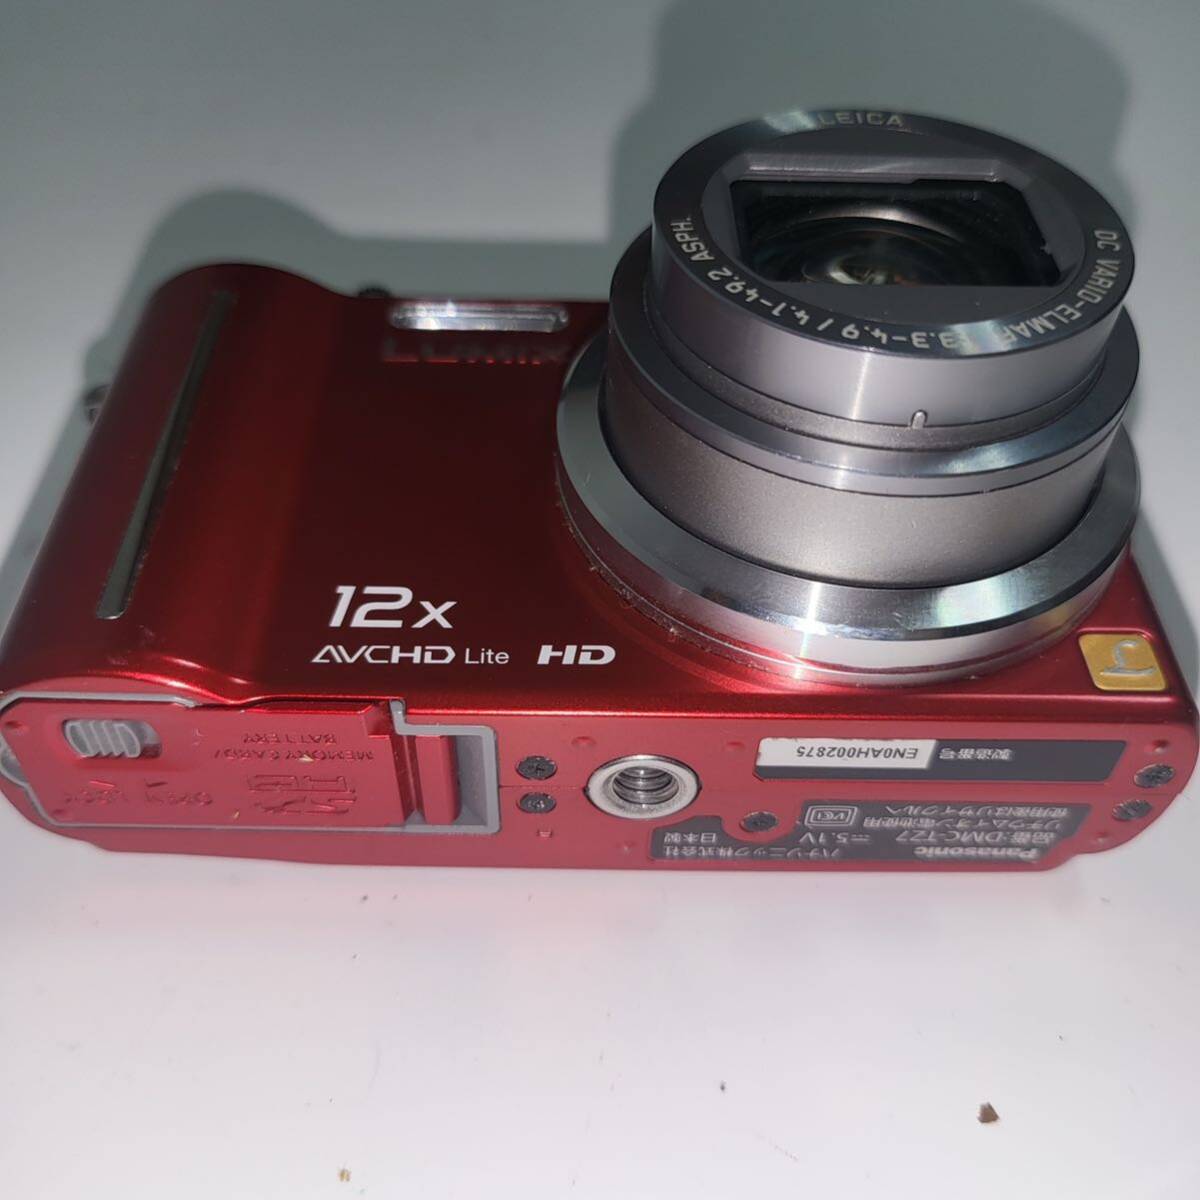  не использовался . близкий Panasonic цифровая камера LUMIX1010 десять тысяч пикселей оптика 12 кратный zoom ( голубой )DMCTZ7A DMC-TZ7-R ( рабочее состояние подтверждено )